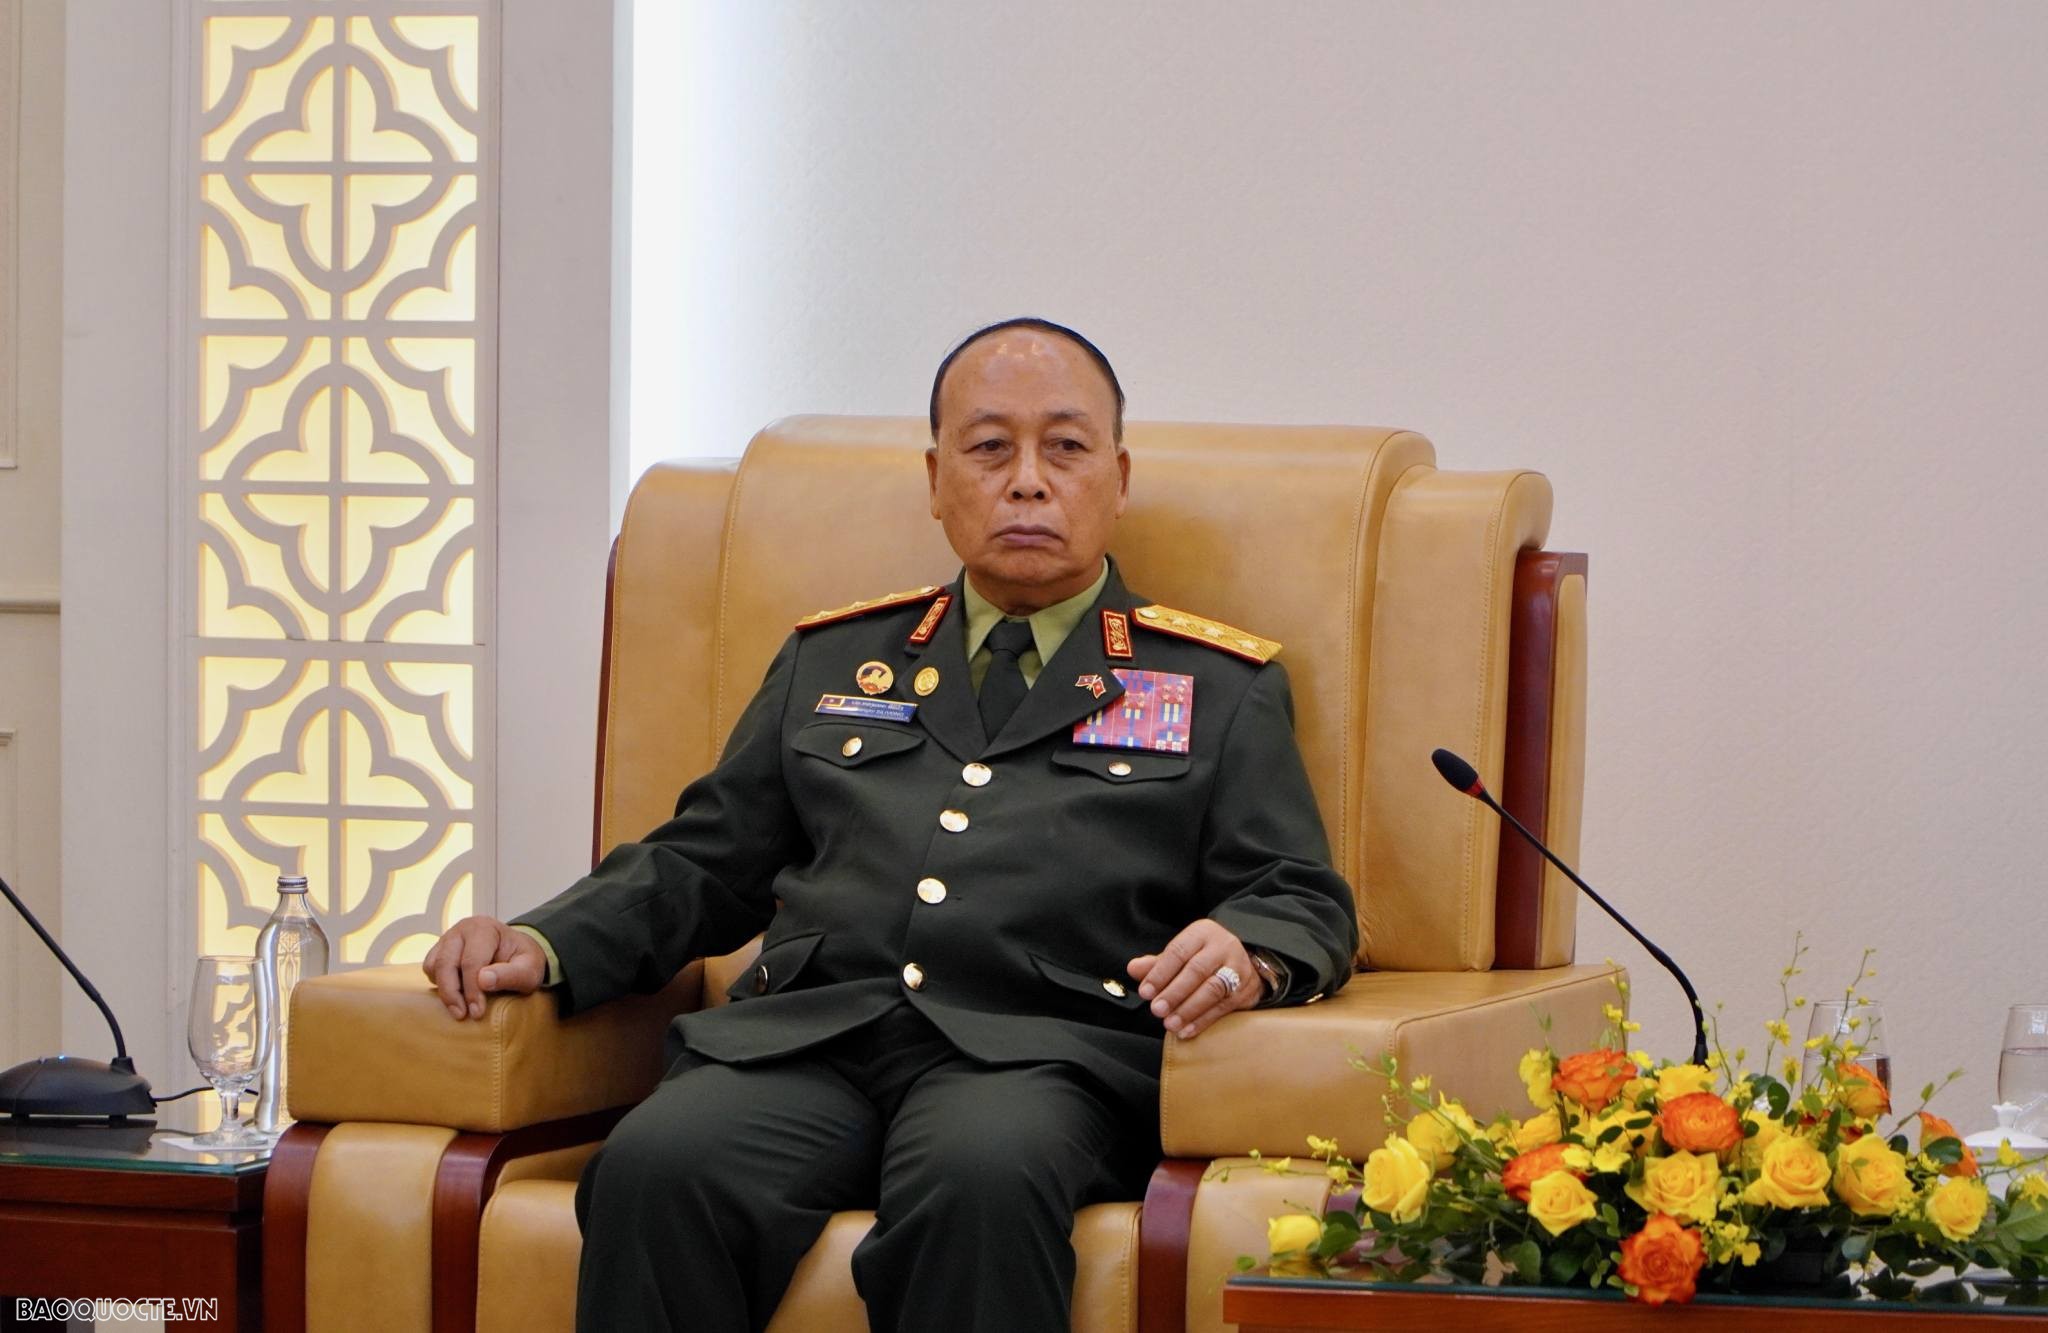 Đồng chí Thượng tướng Thongloi Silivong cảm ơn Bộ Quốc phòng Việt Nam nói riêng, Đảng và Chính phủ Việt Nam nói chung luôn kề vai, sát cánh hỗ trợ Lào trong tất cả những giai đoạn khó khăn. (Ảnh: Tuấn Việt)